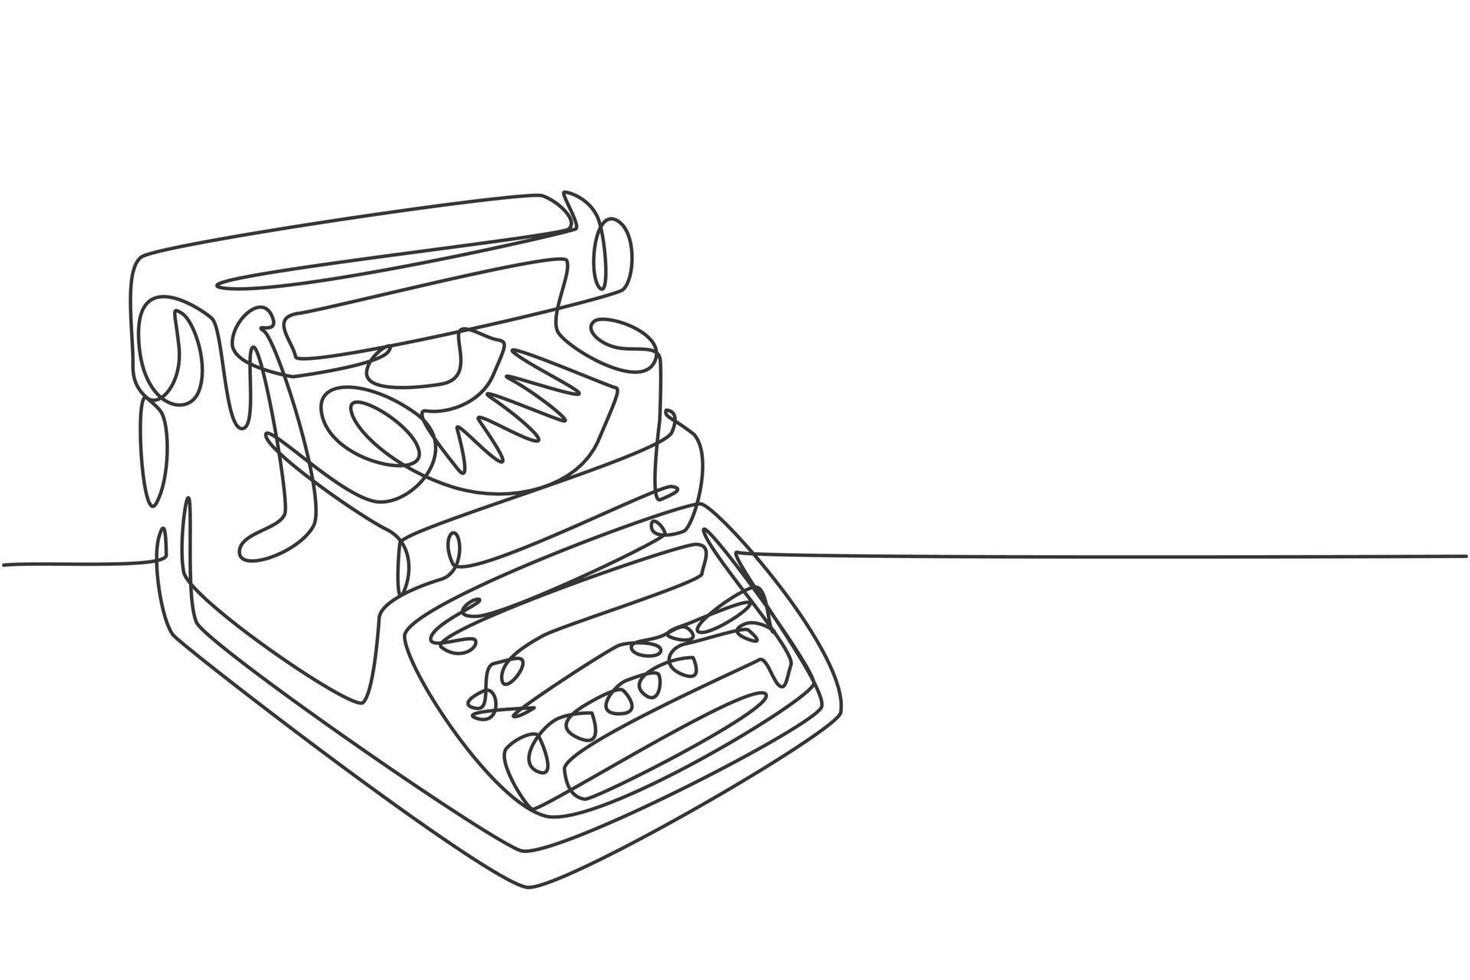 un dibujo de una sola línea de máquina de escribir clásica antigua retro  desde la vista lateral. Concepto de elemento de oficina vintage dibujo de  línea continua diseño gráfico ilustración vectorial 3593397